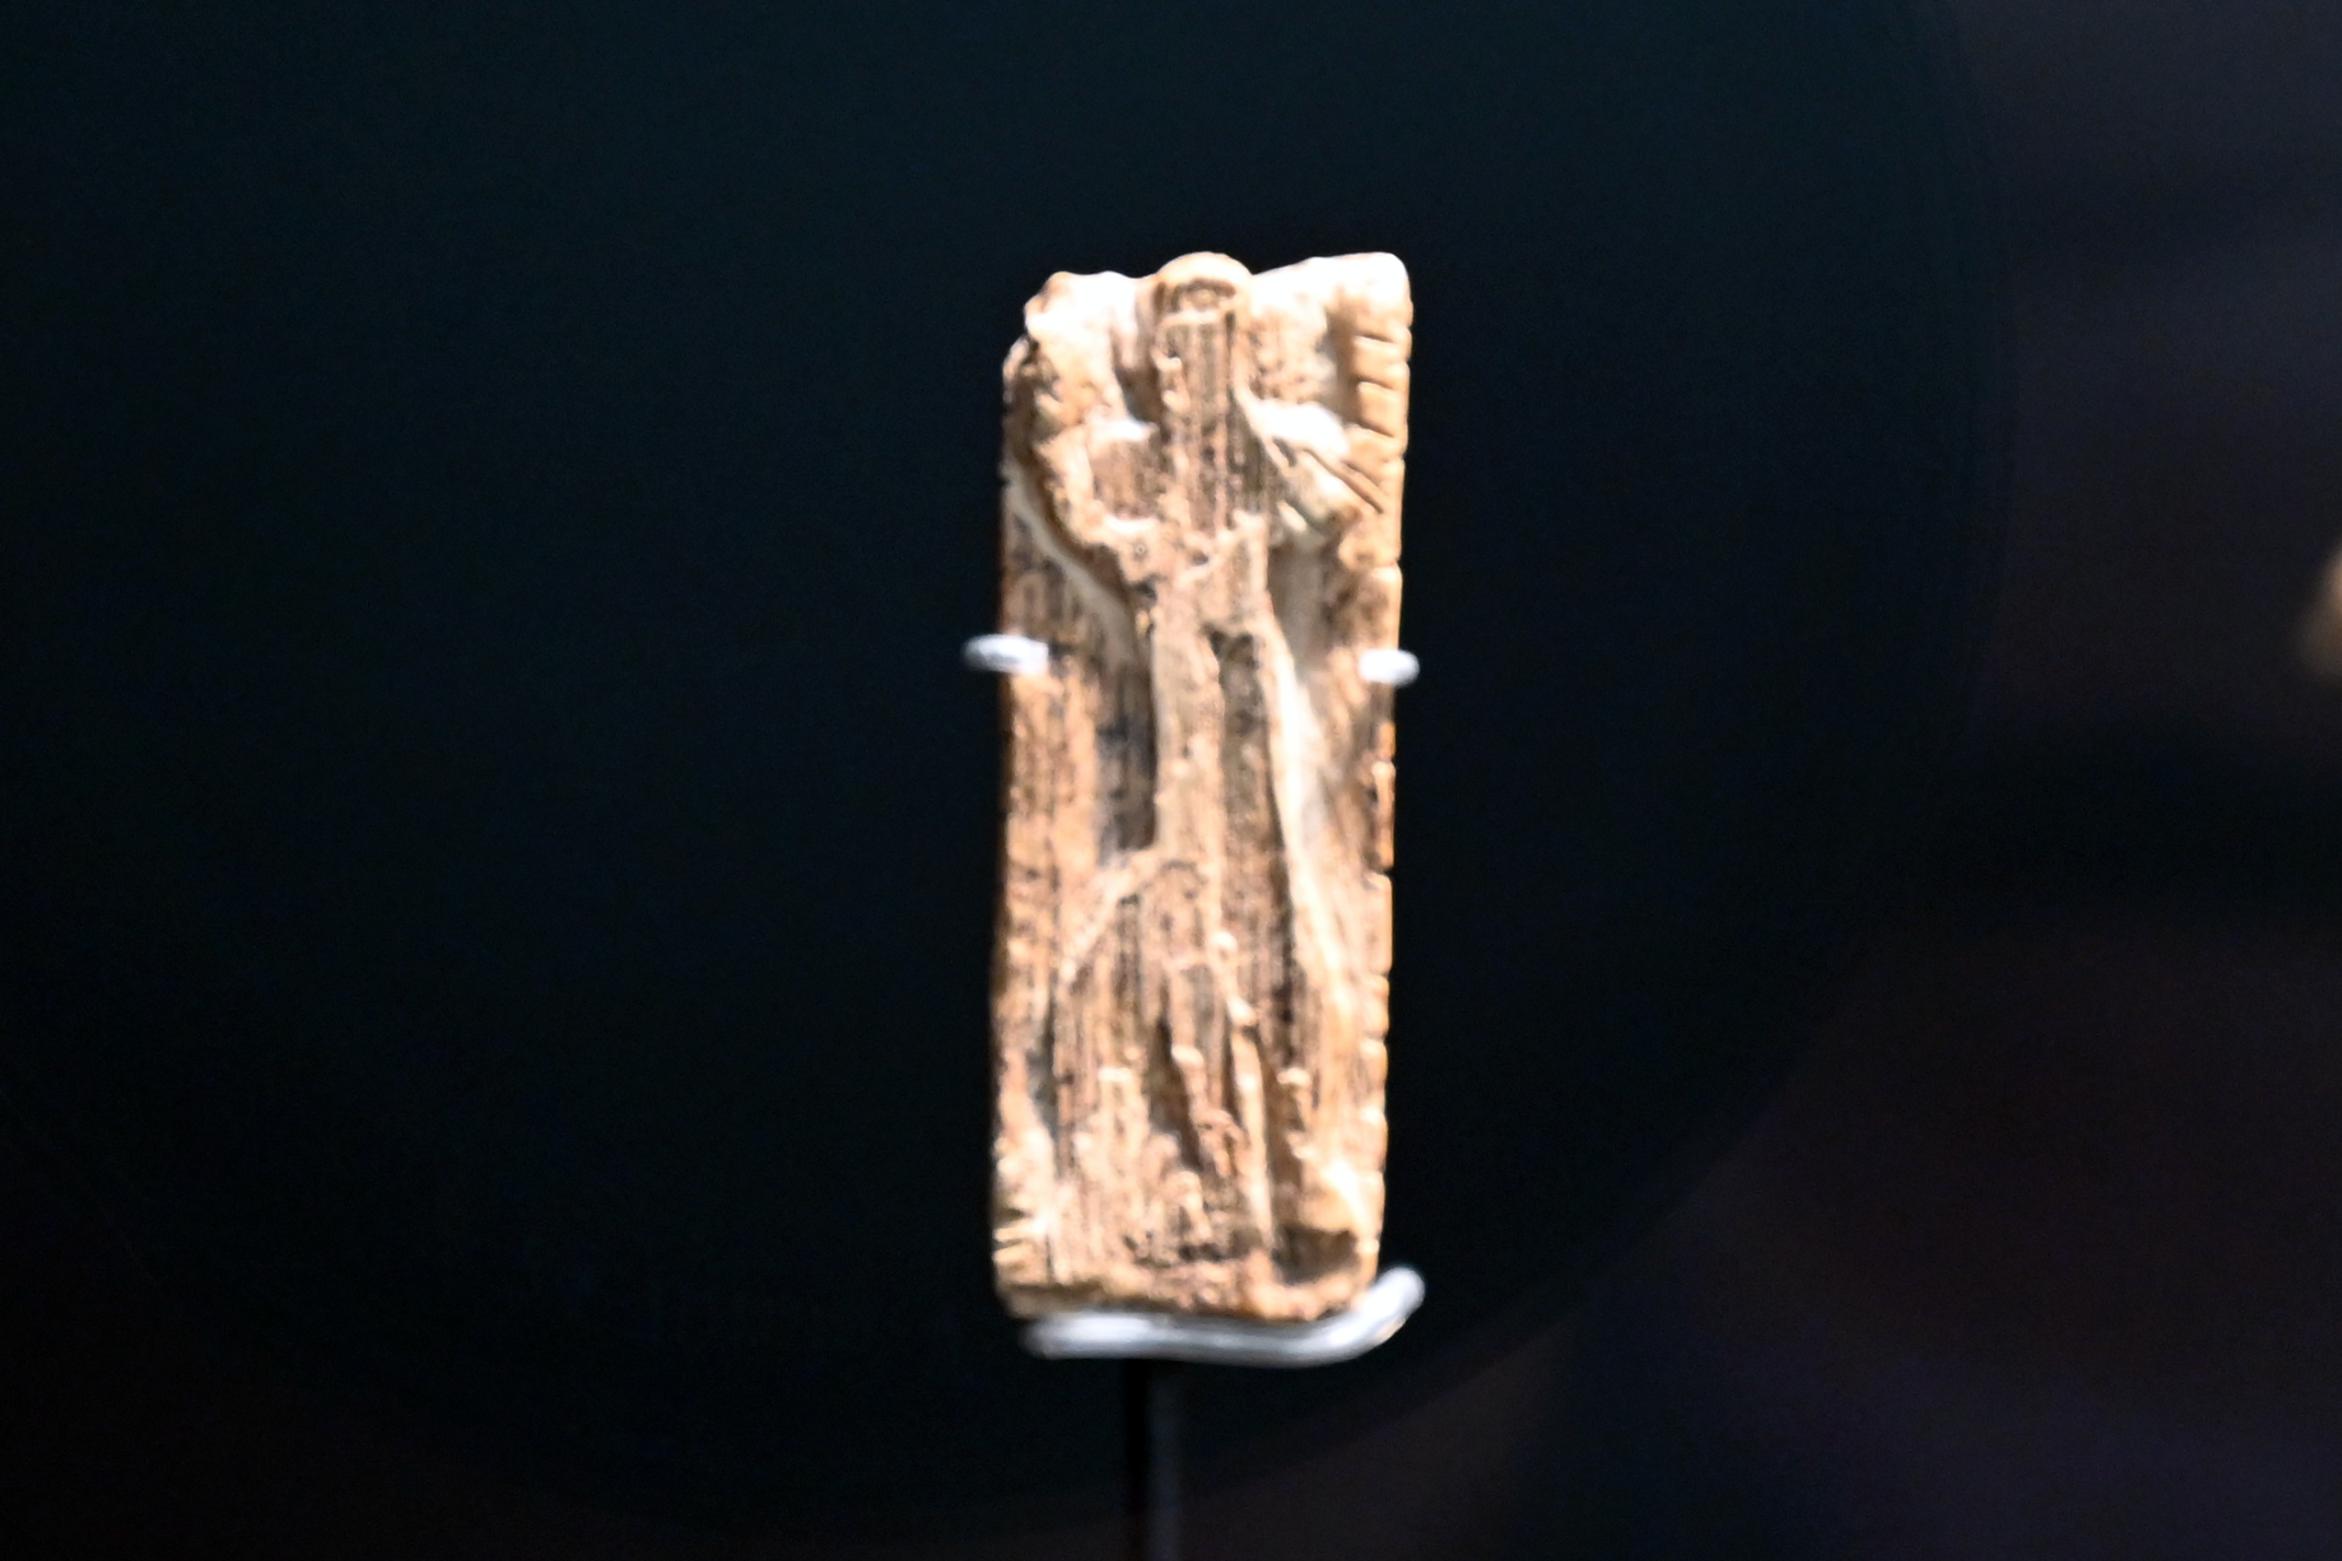 Adorant, Mischwesen aus Löwe und Mensch, 38000 - 33000 v. Chr., Bild 2/4